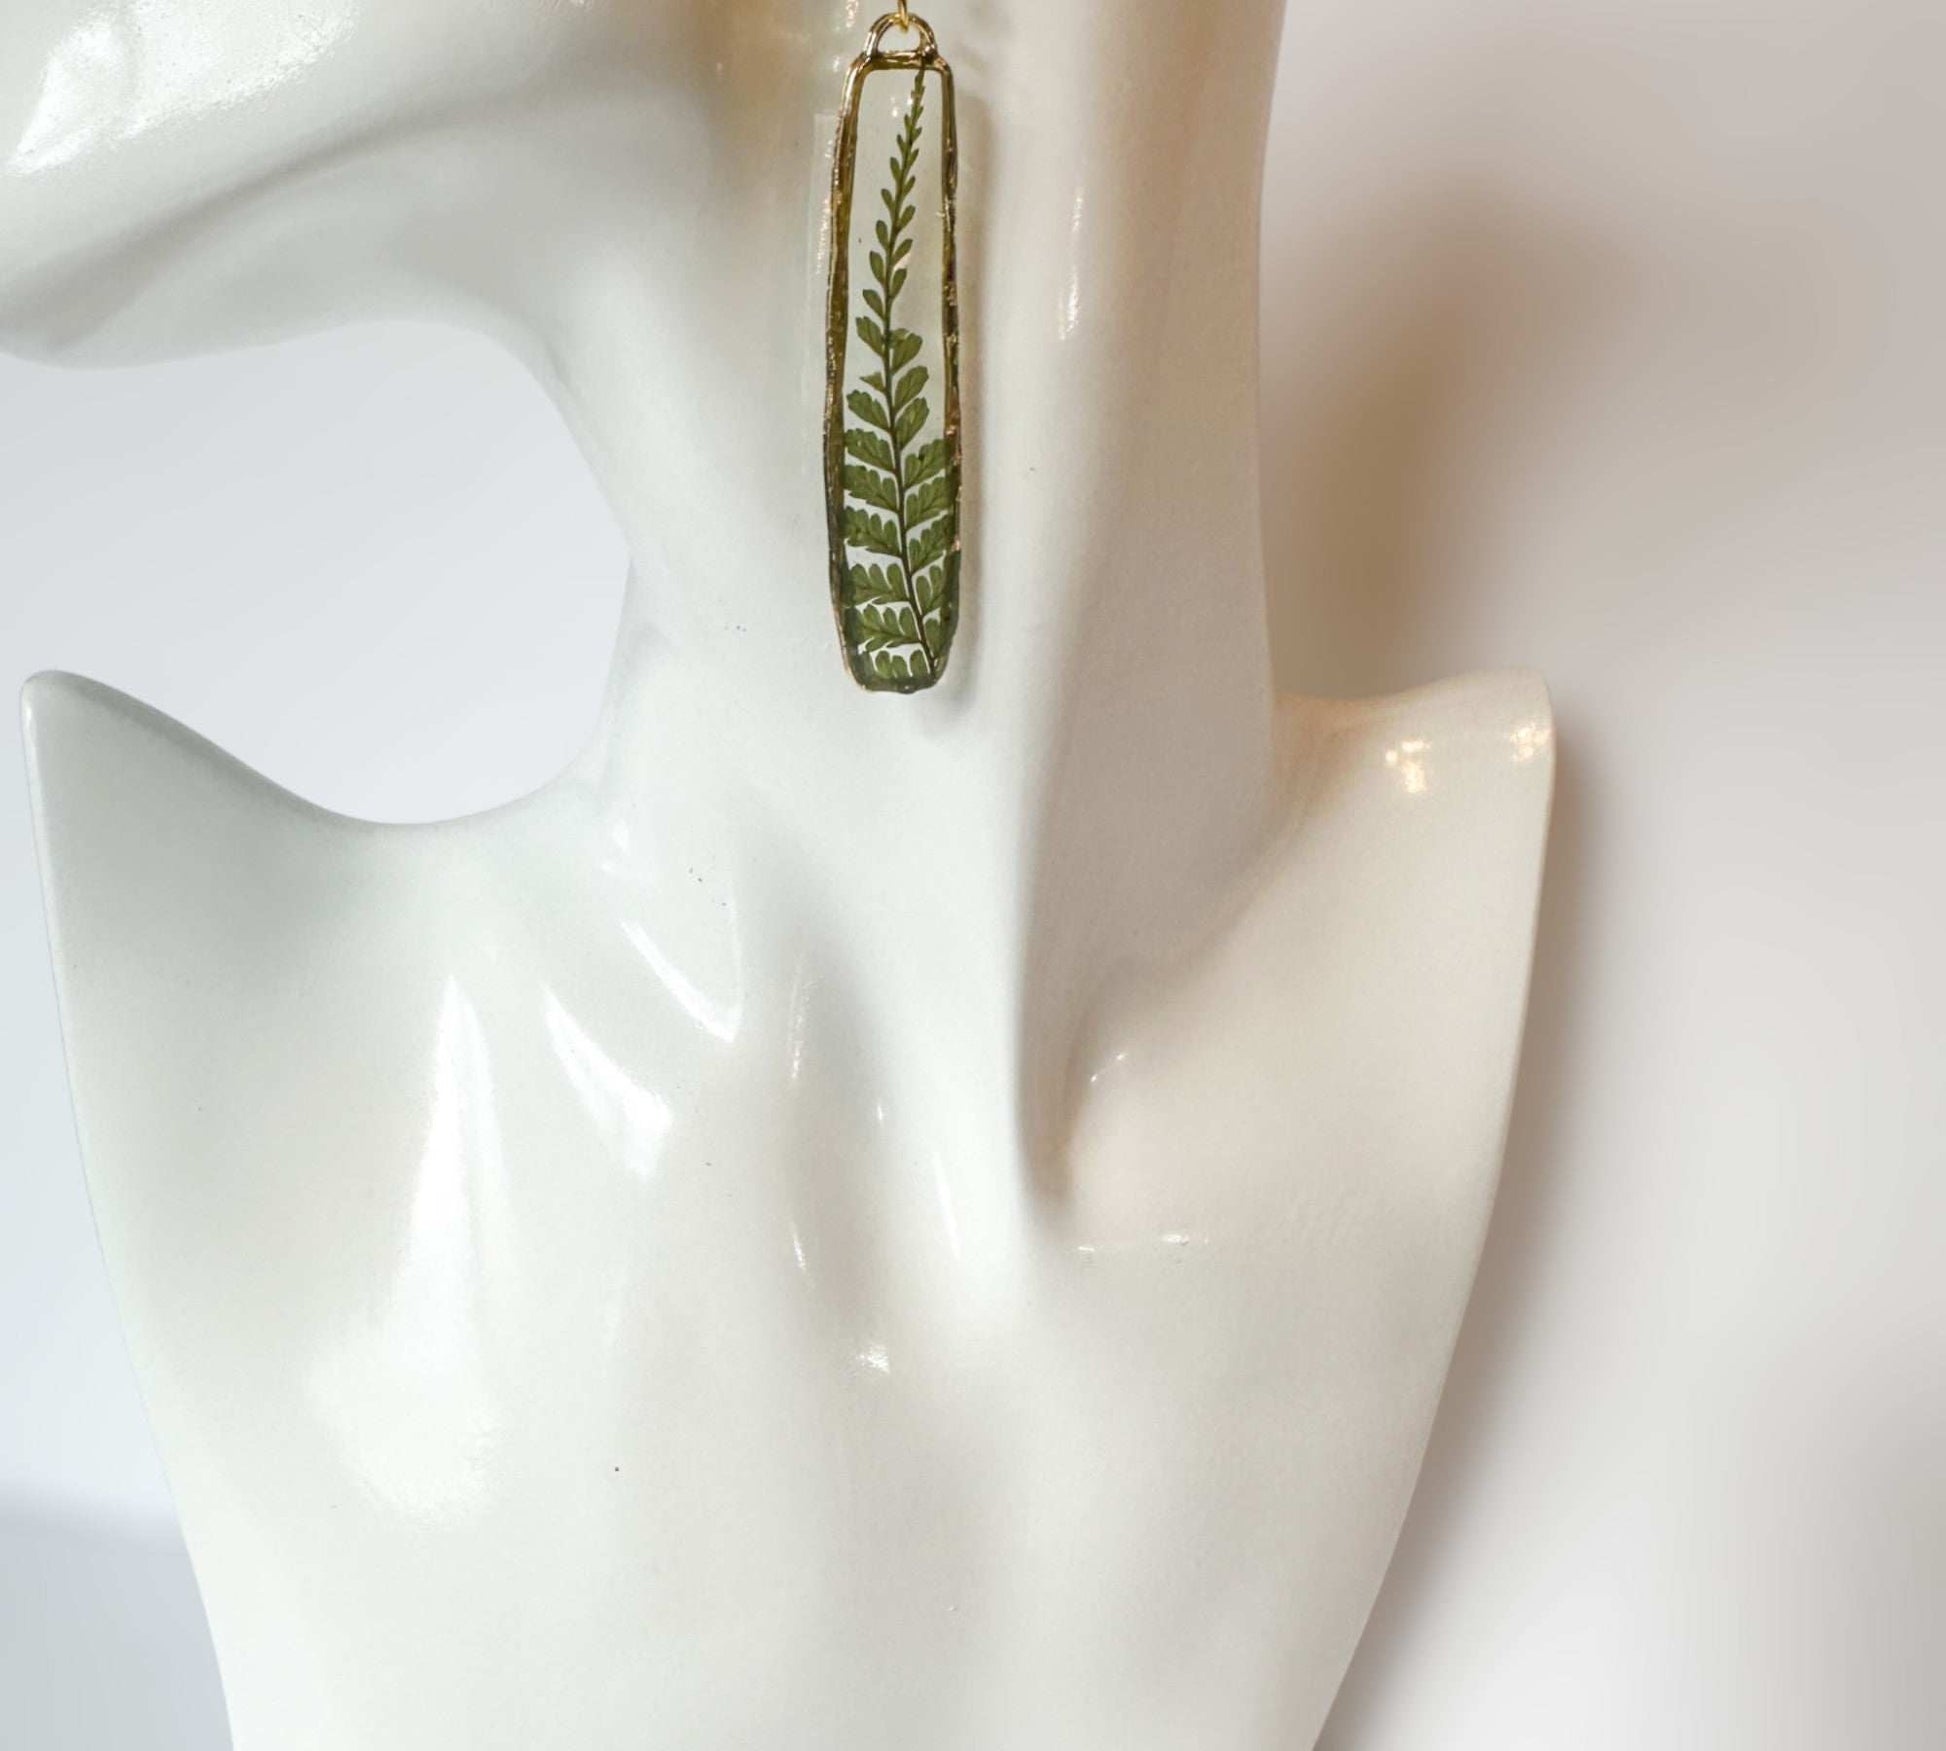 Fern Cascade Earrings - Minimalistic Meets Boho Style - Pressed Ferns